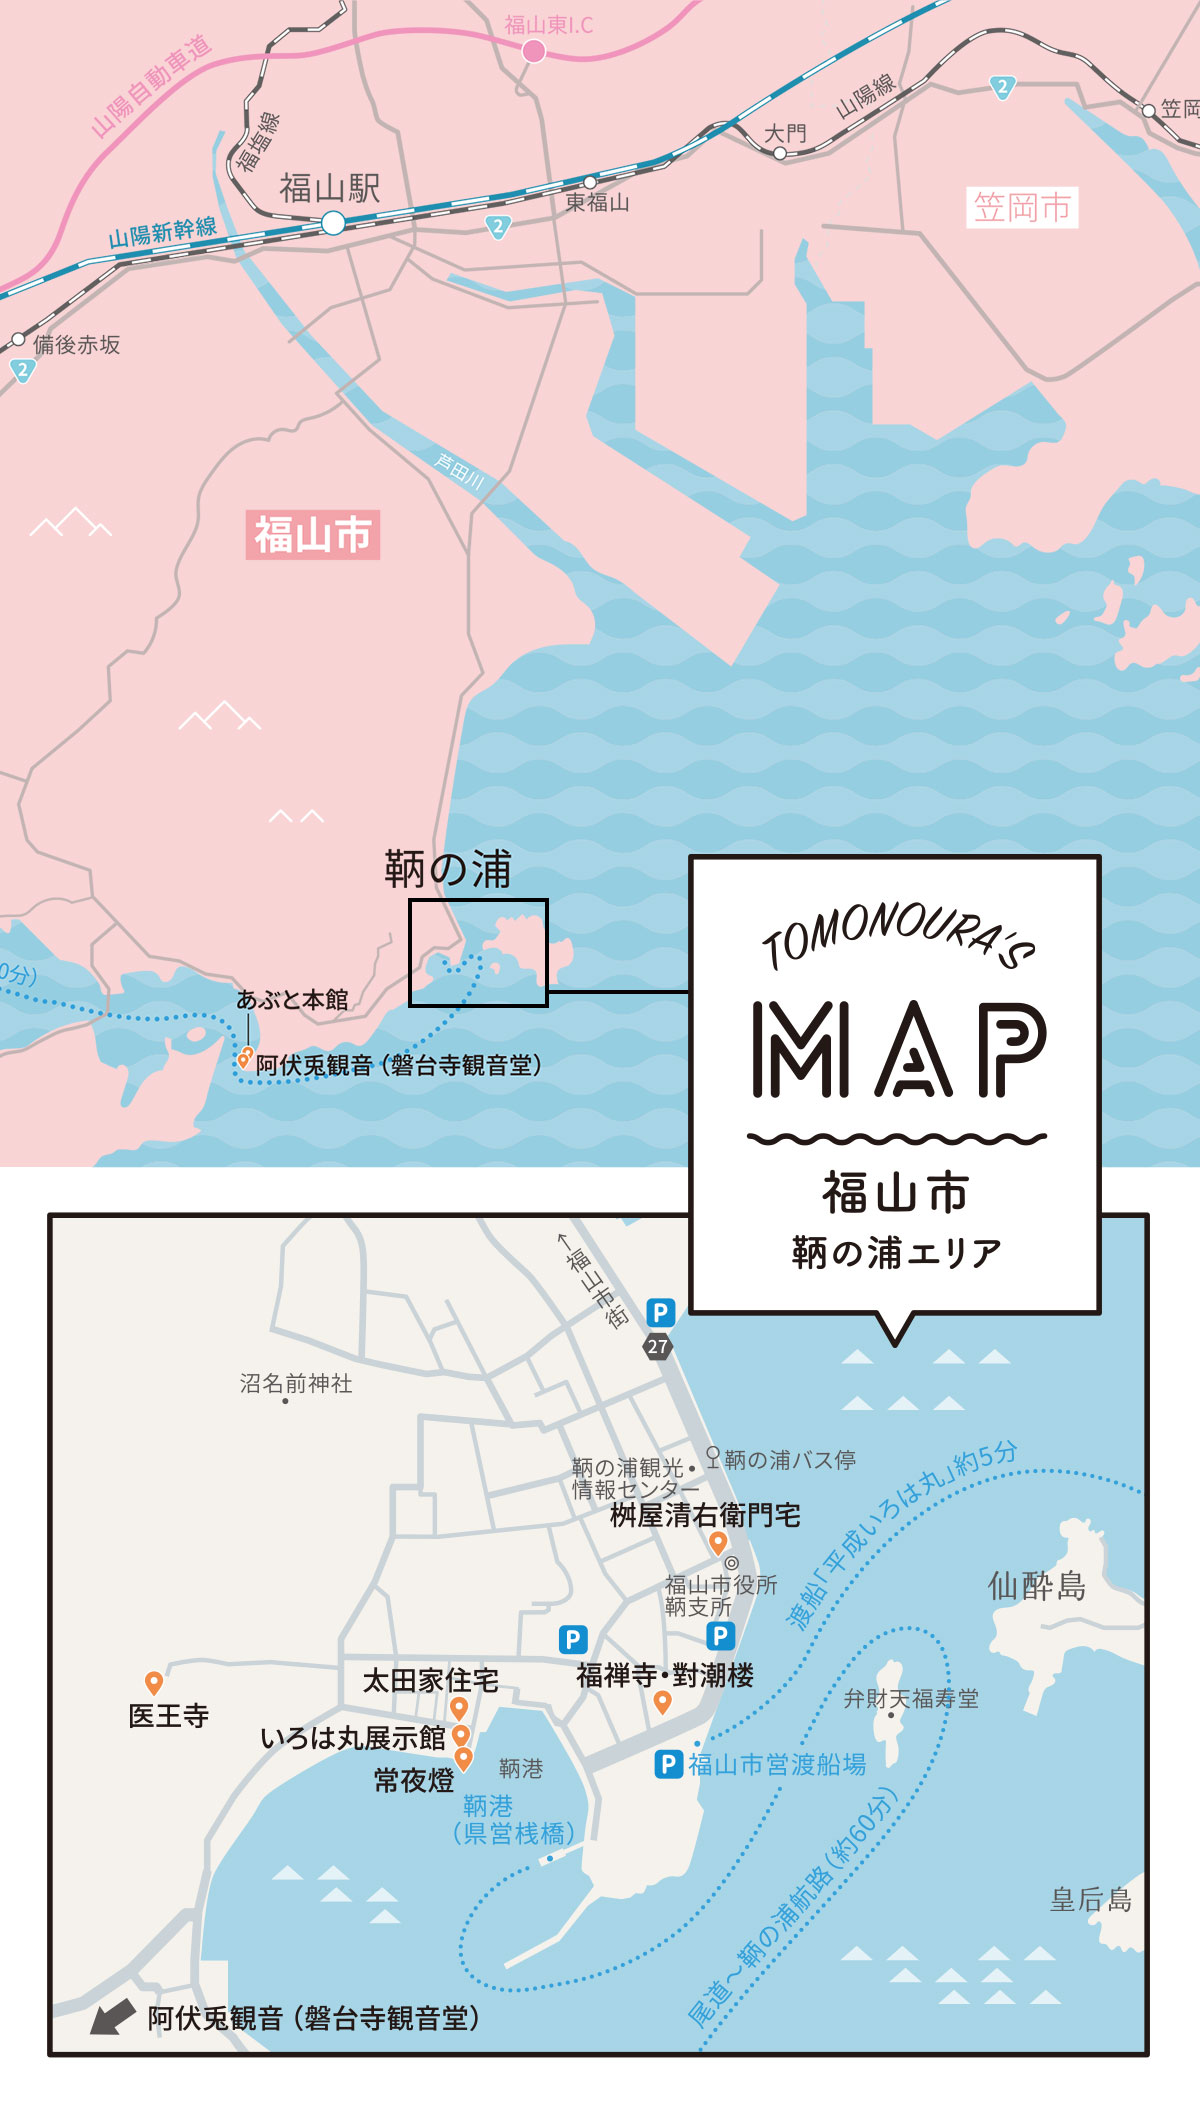 福山市鞆の浦エリア TOMONOURA'S MAP